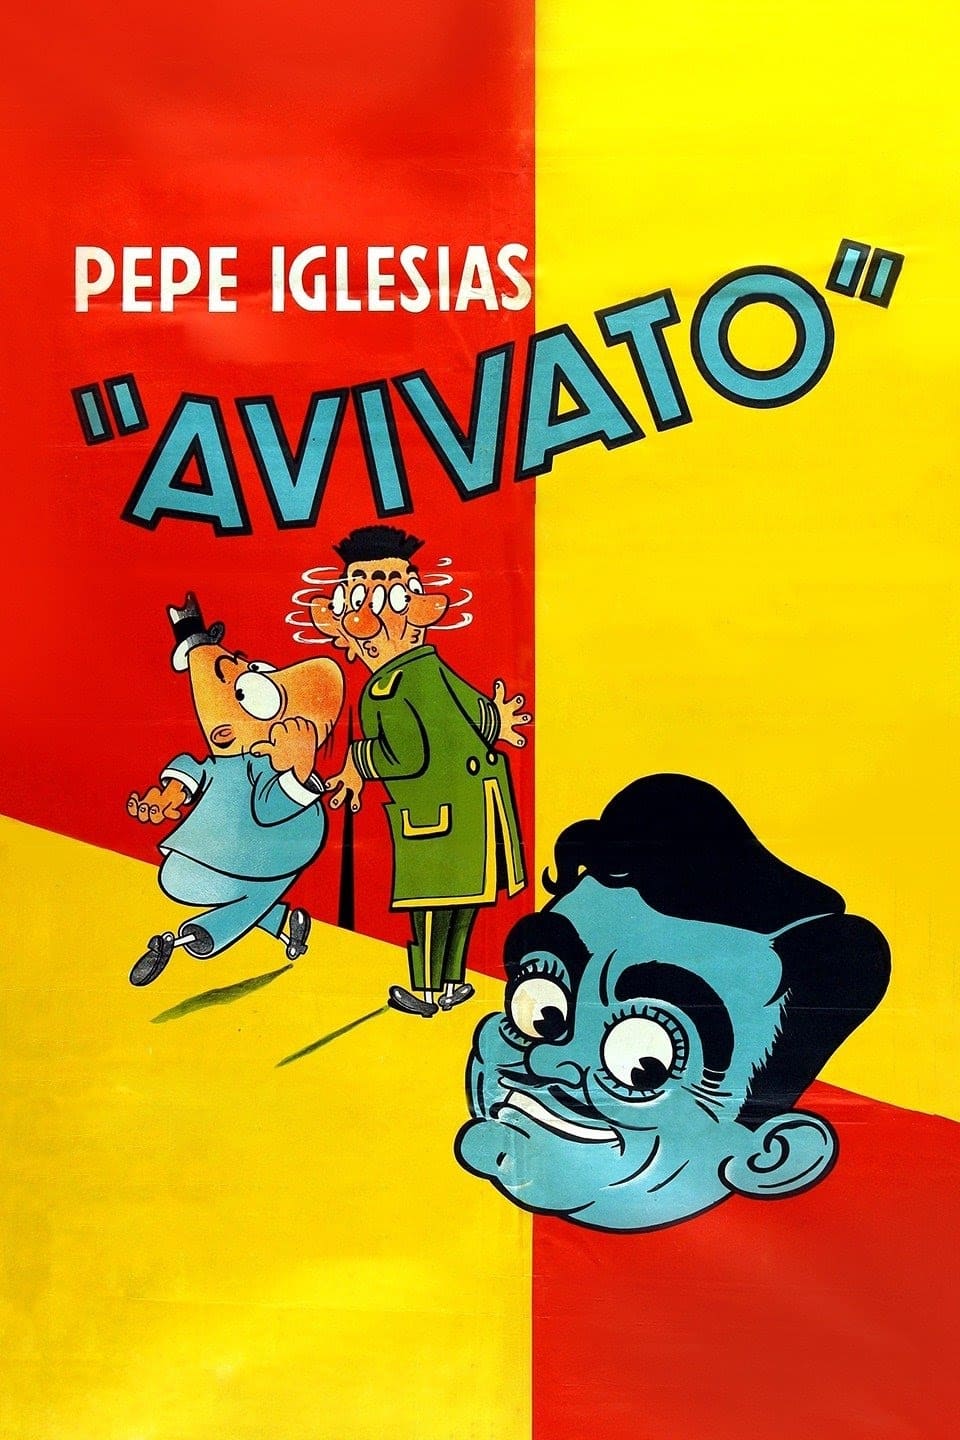 Avivato (El rey de los vivos) (1949)